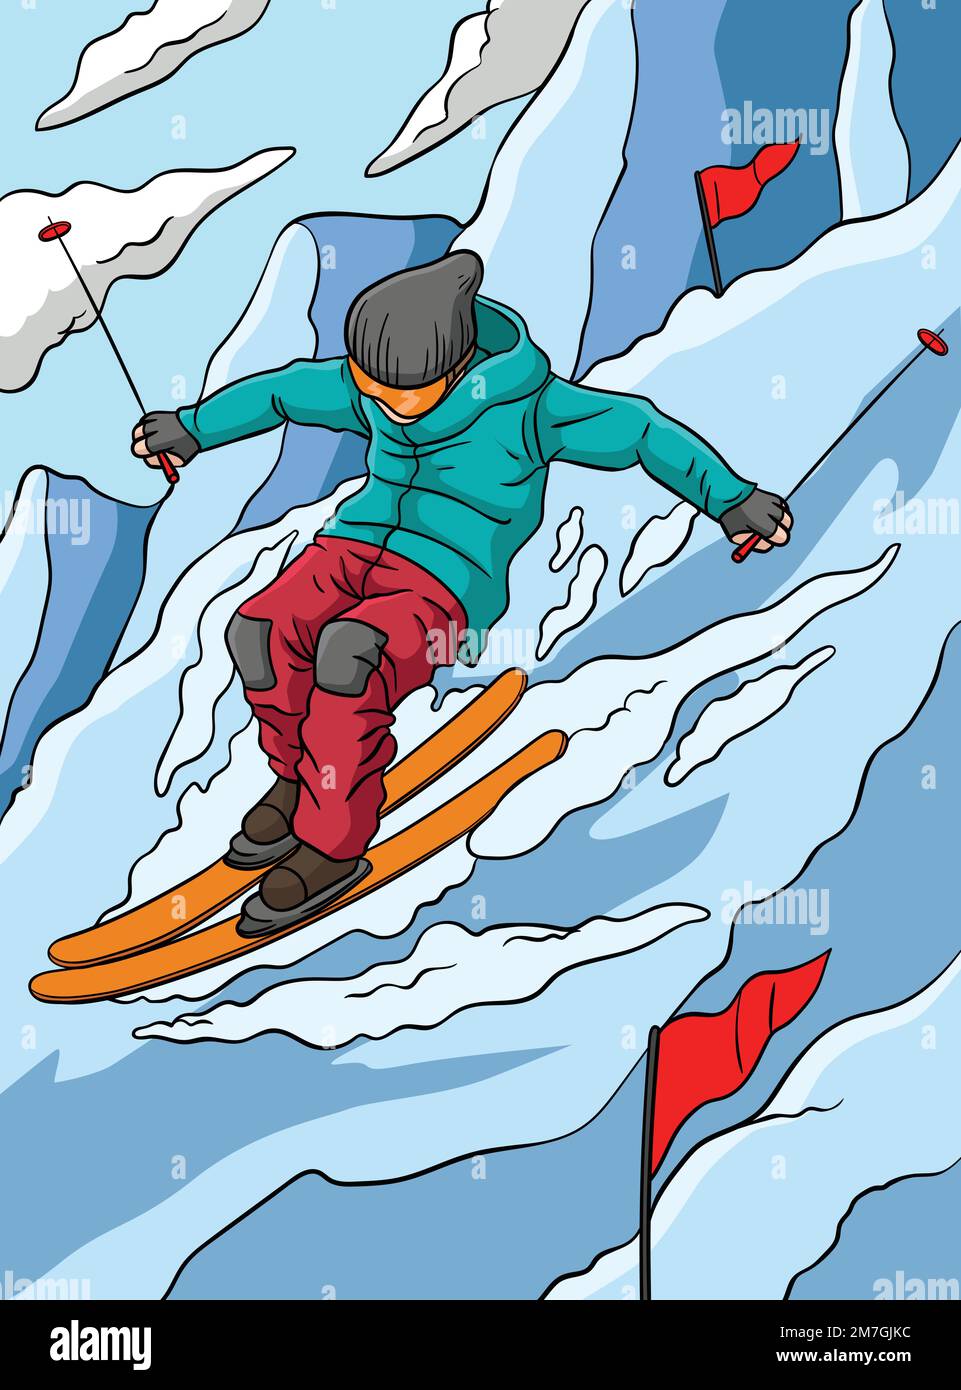 Dessin d'un dessin animé de couleur pour le ski alpin Illustration de Vecteur